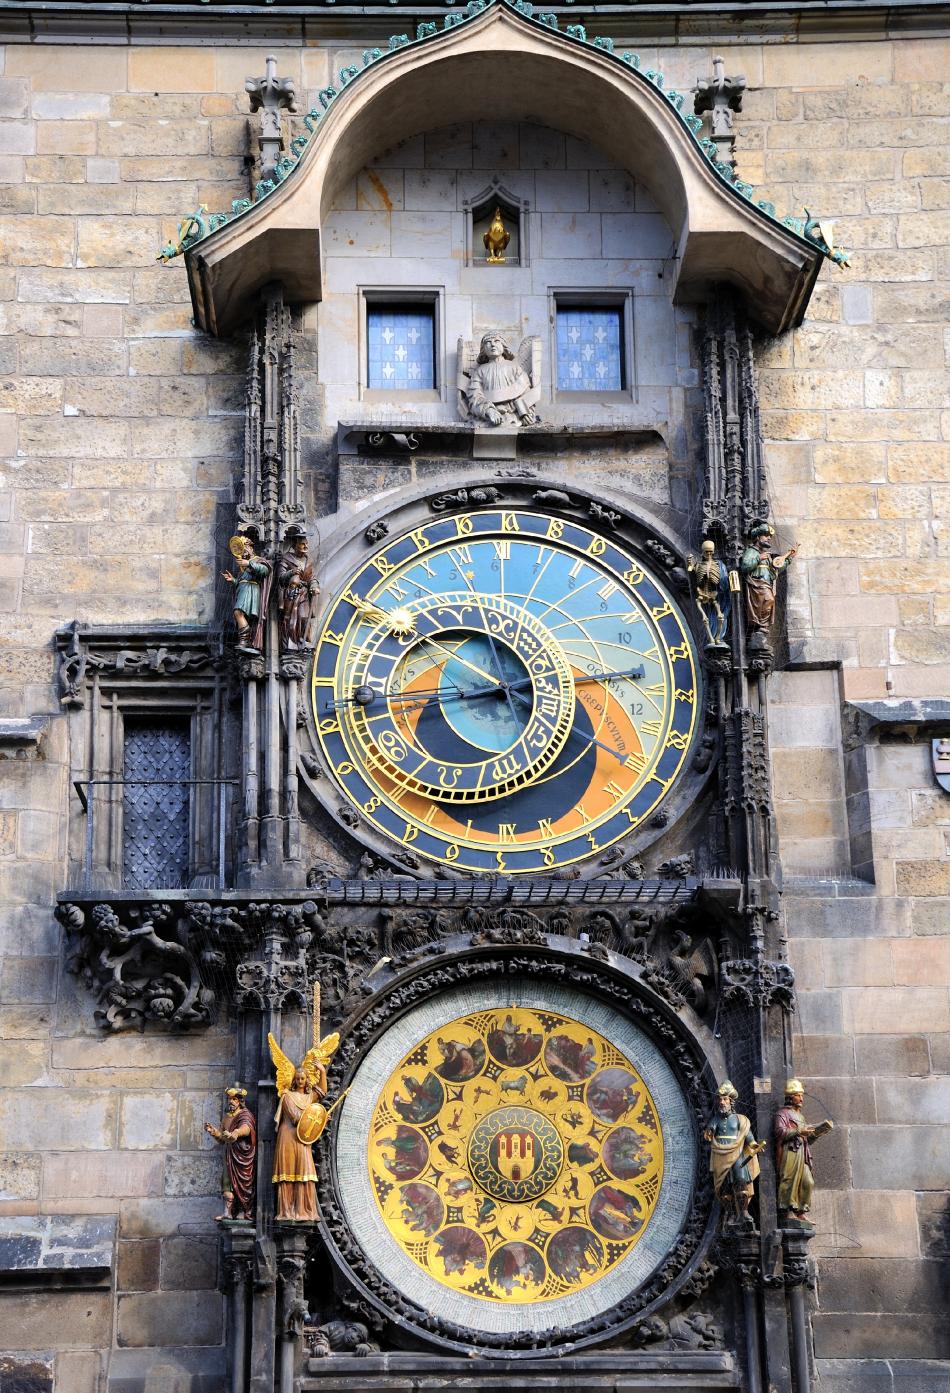 Praga - Staromiejski zegar astronomiczny